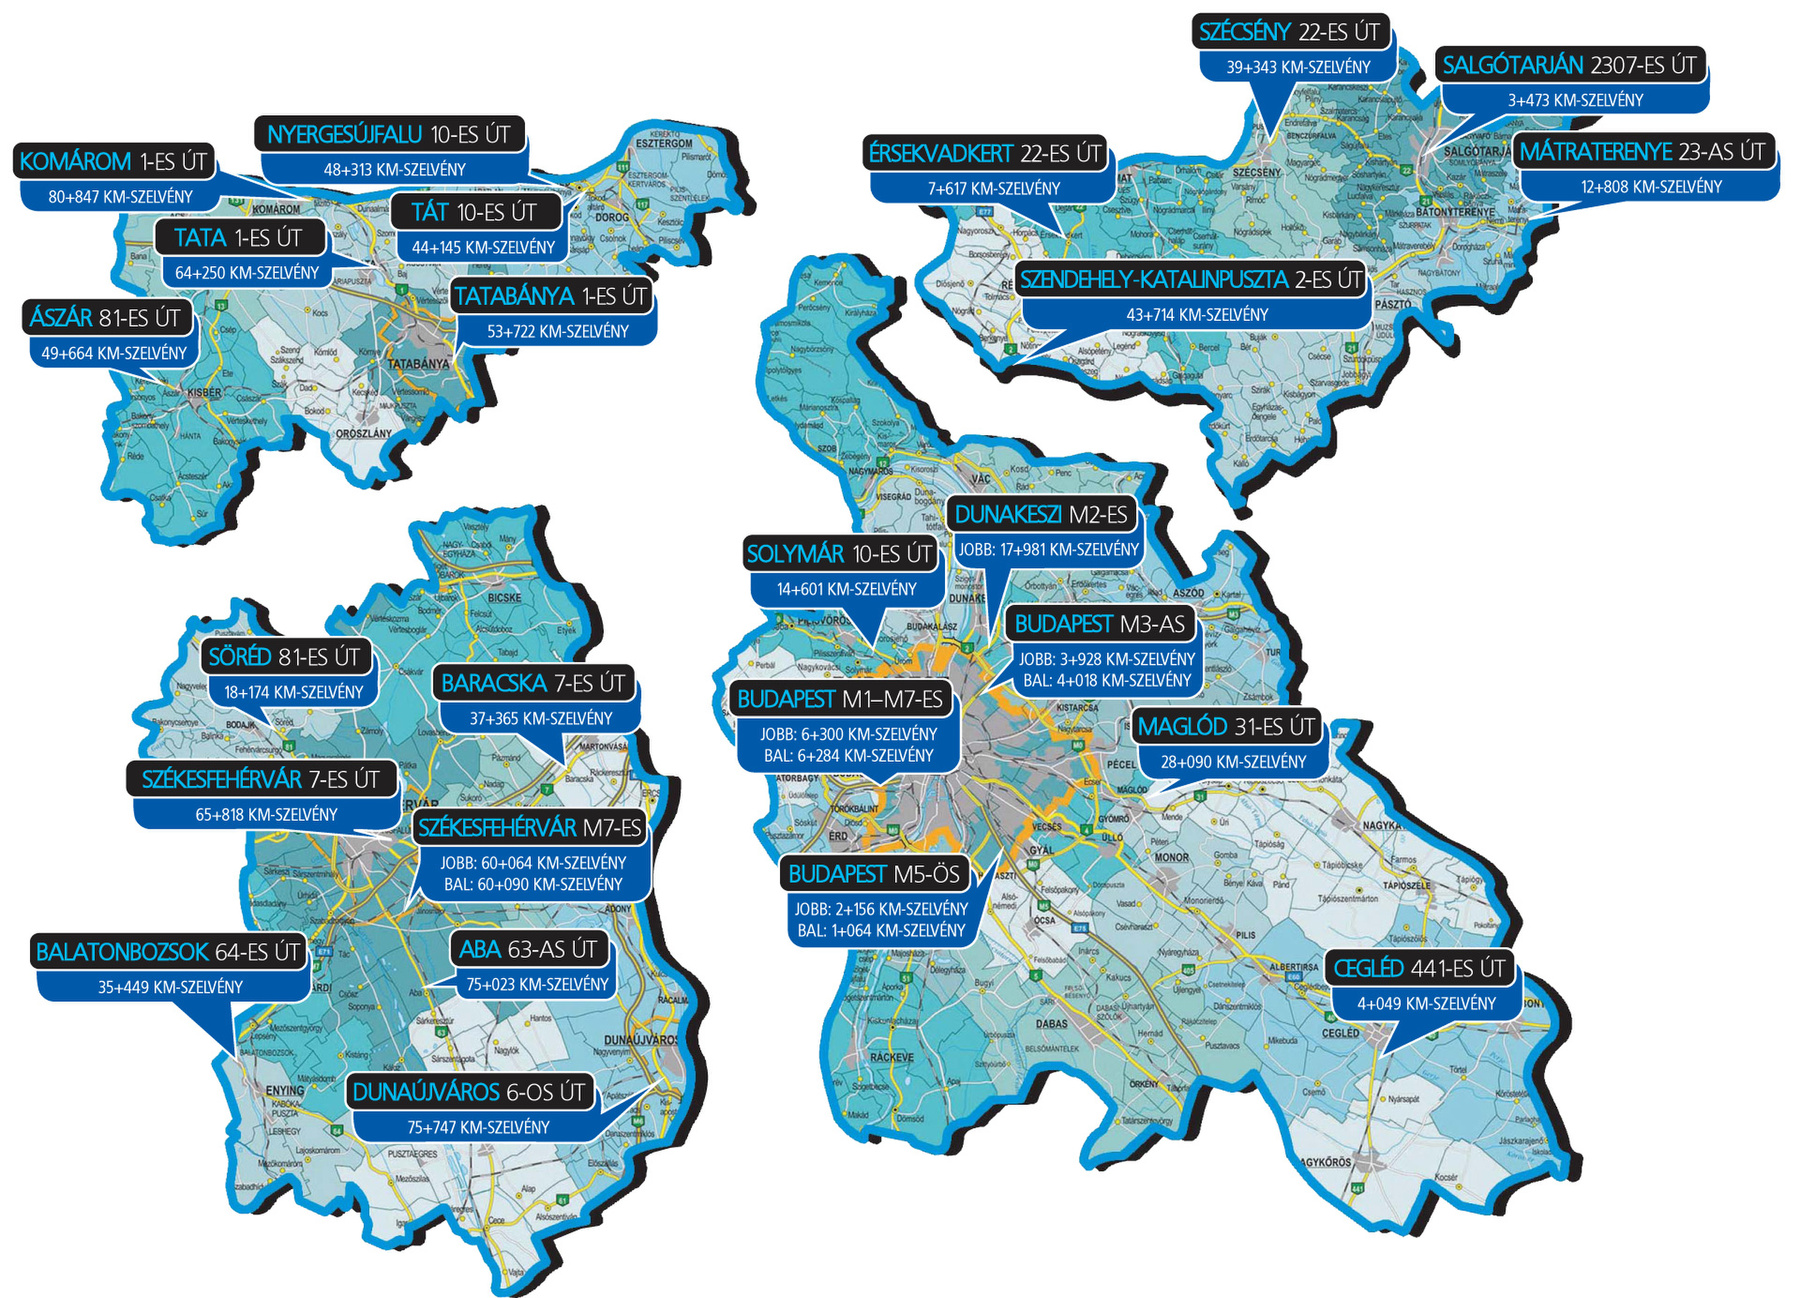 Borsod-Abaúj-Zemplén megye, Heves megye, Hajdú-Bihar megye, valamint Békés megye és Bács-Kiskun megye VÉDA ellenőrzőpontjai